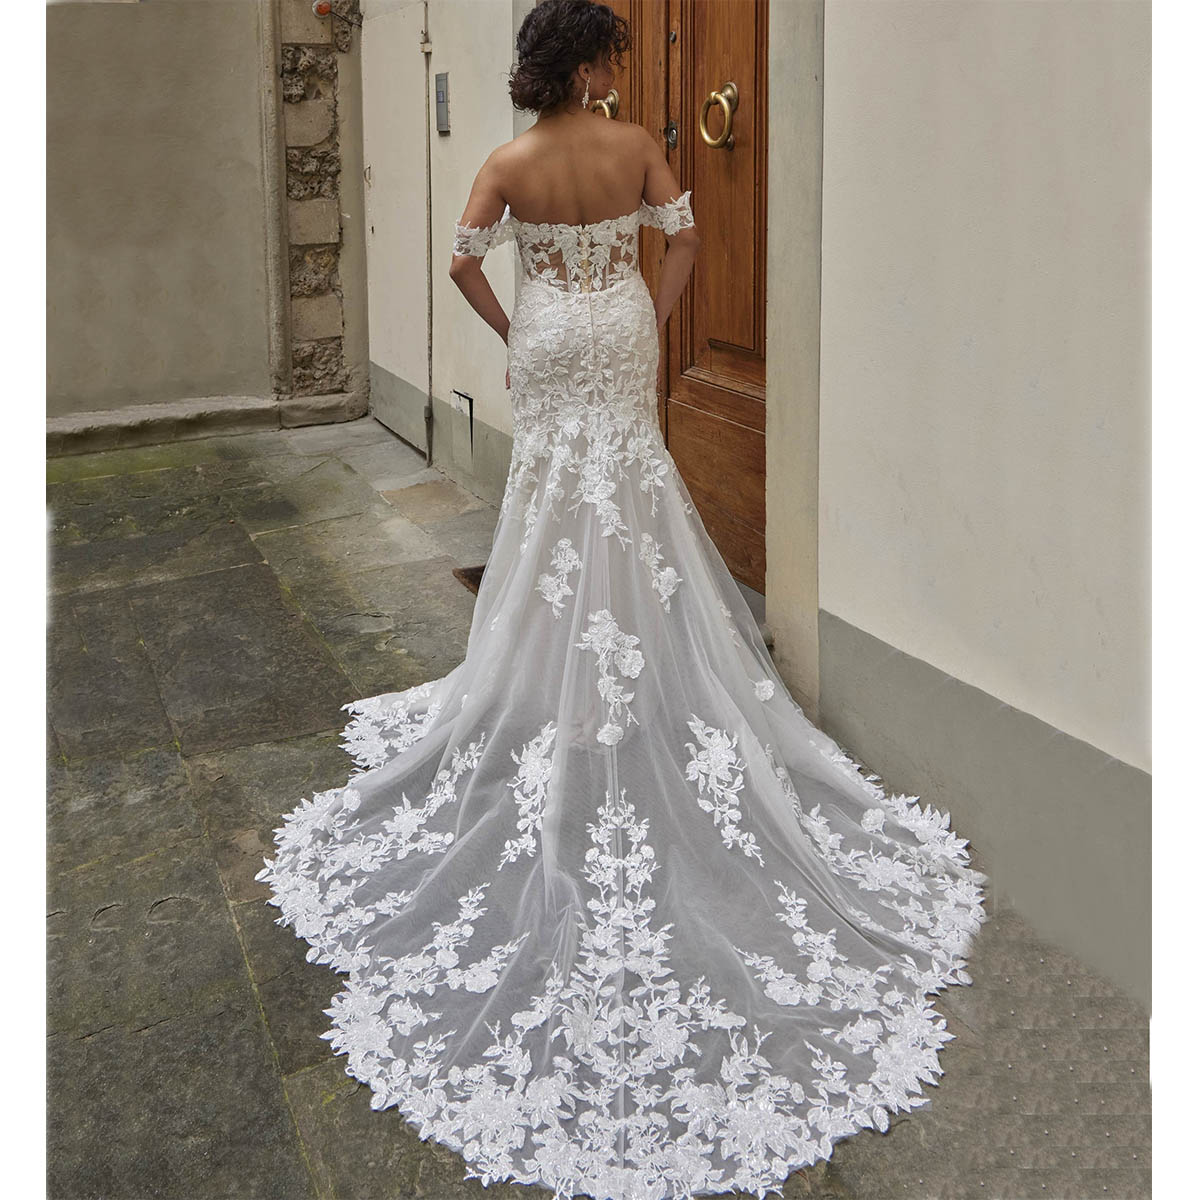 Νυφικό Φόρεμα Γοργονέ Τούλινο Με Glitter Και Μανίκια Marriage - 3461